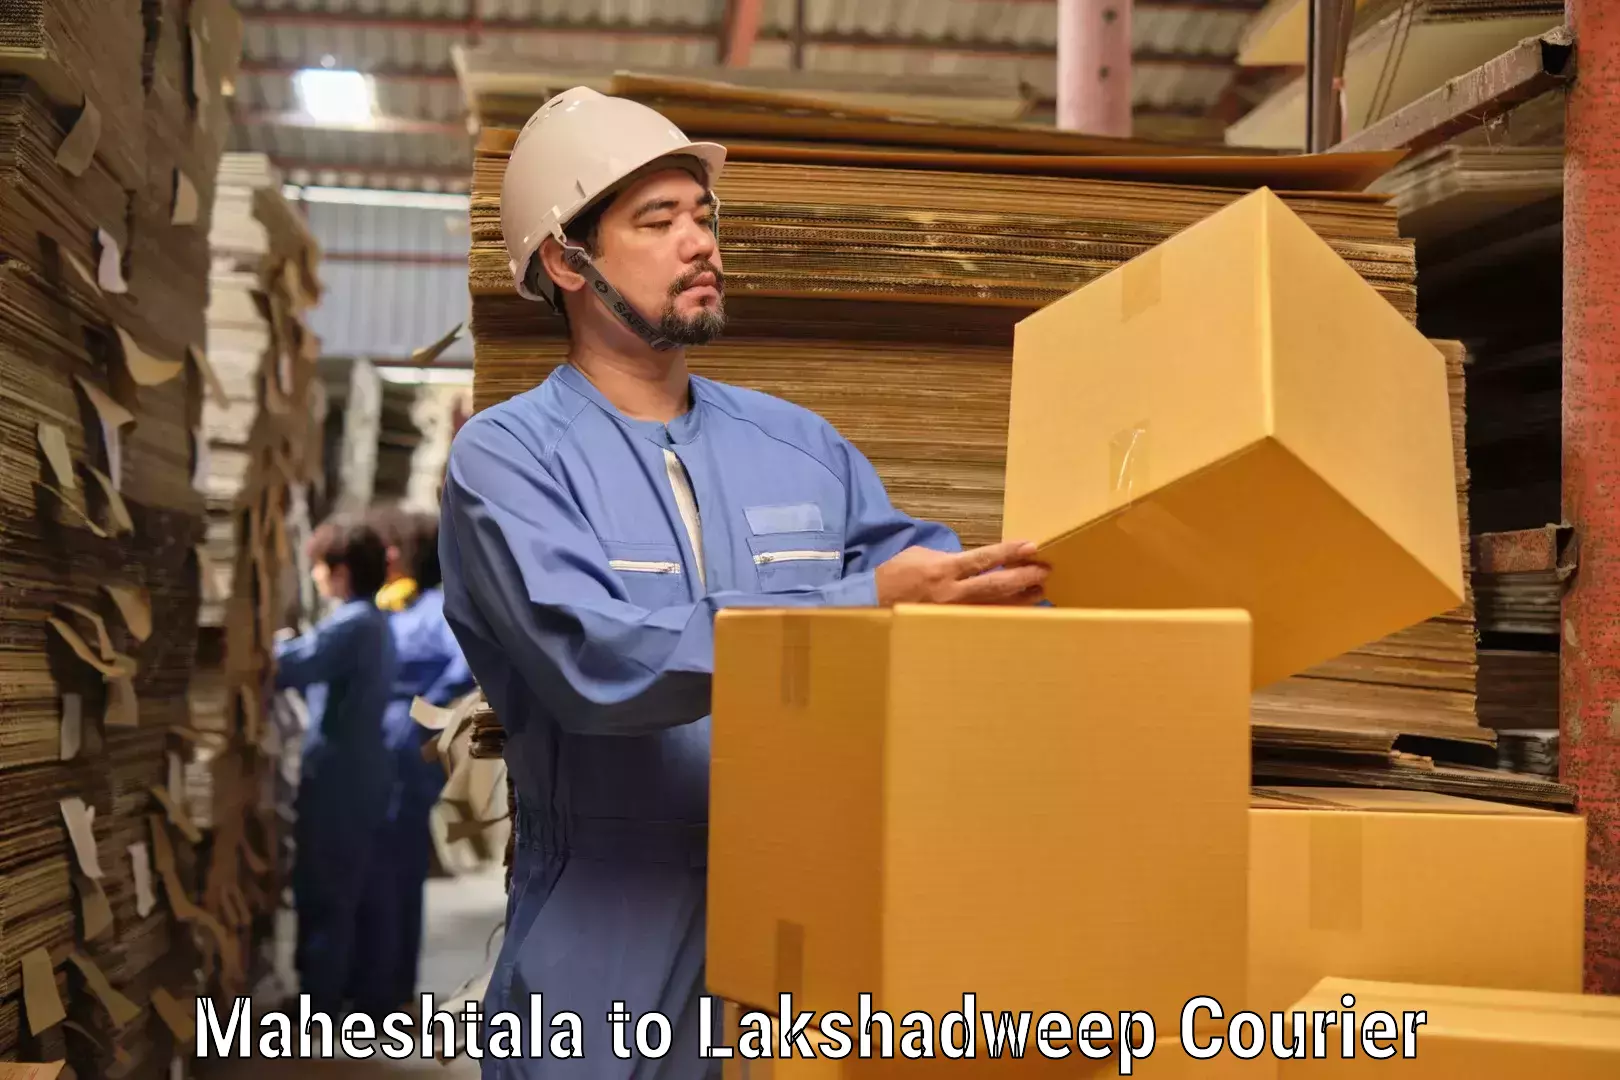 Global logistics network Maheshtala to Lakshadweep